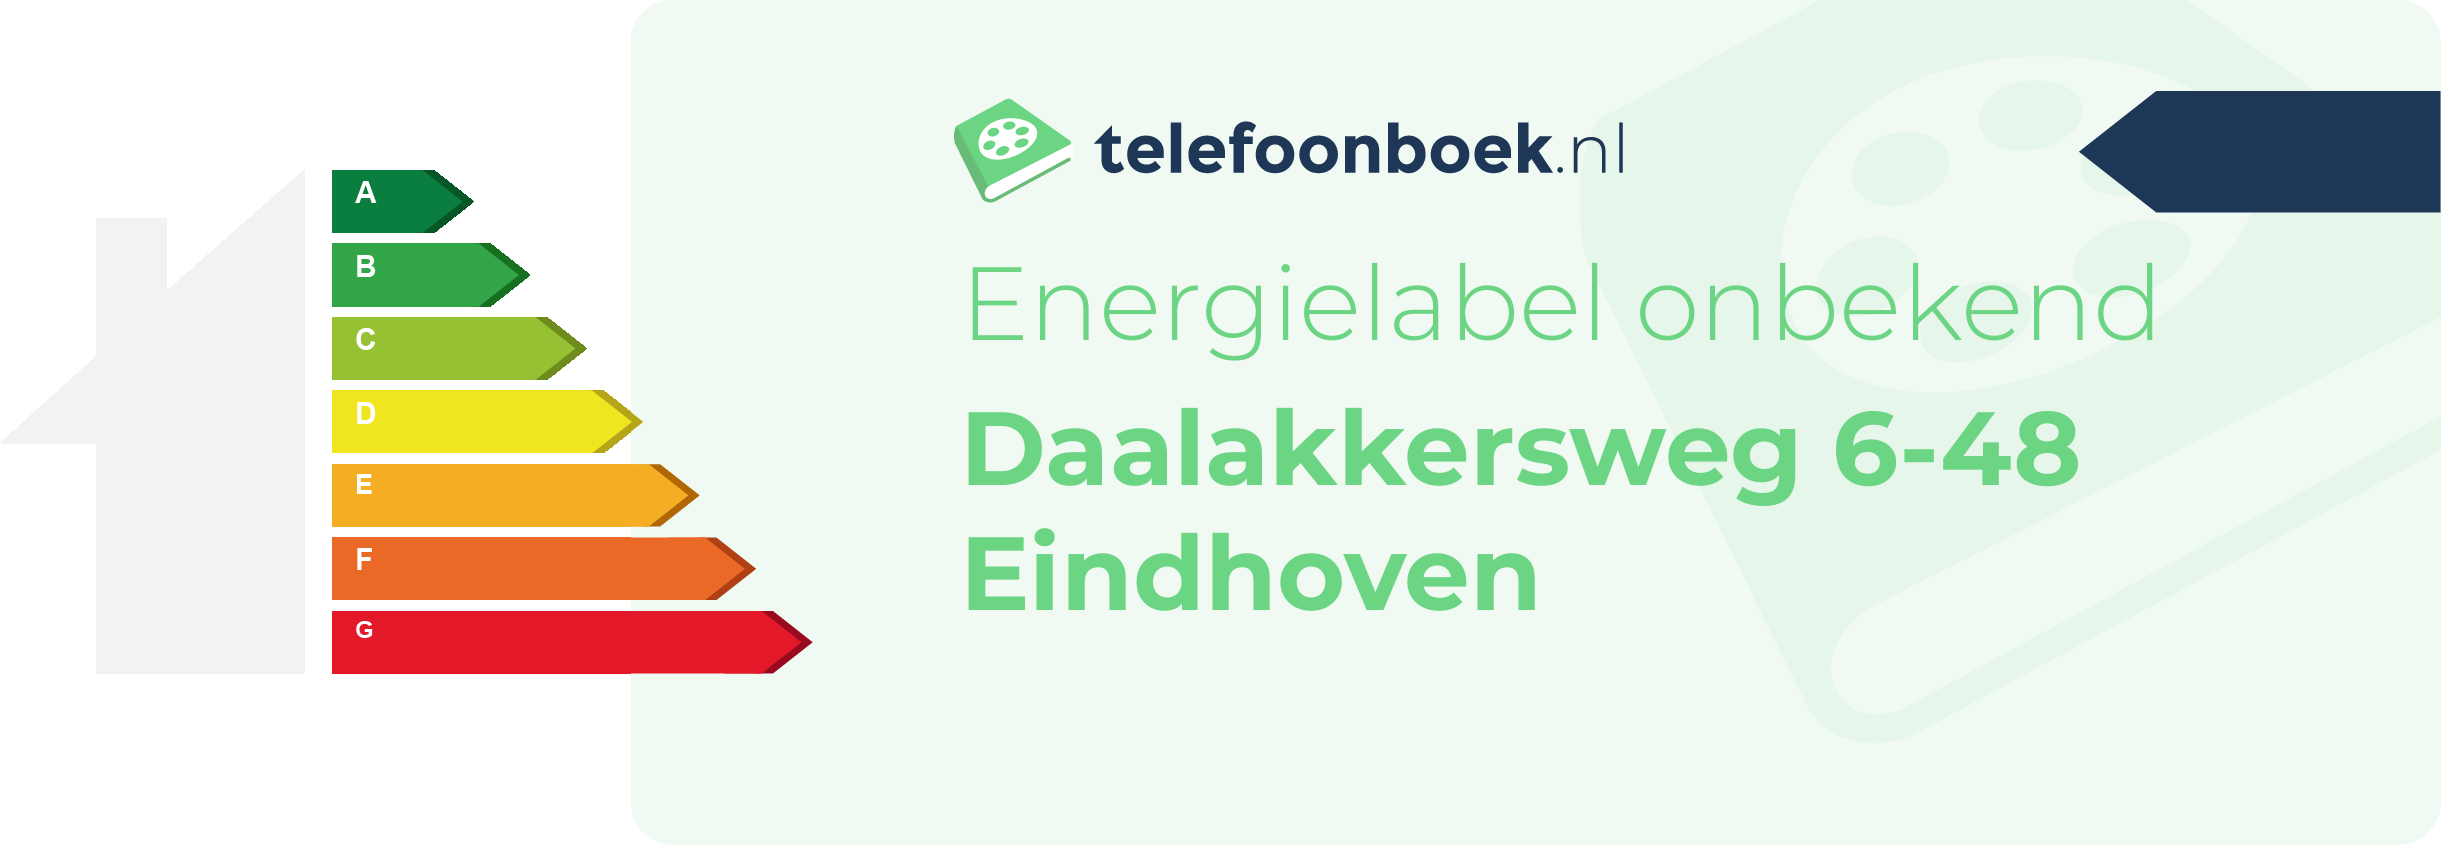 Energielabel Daalakkersweg 6-48 Eindhoven